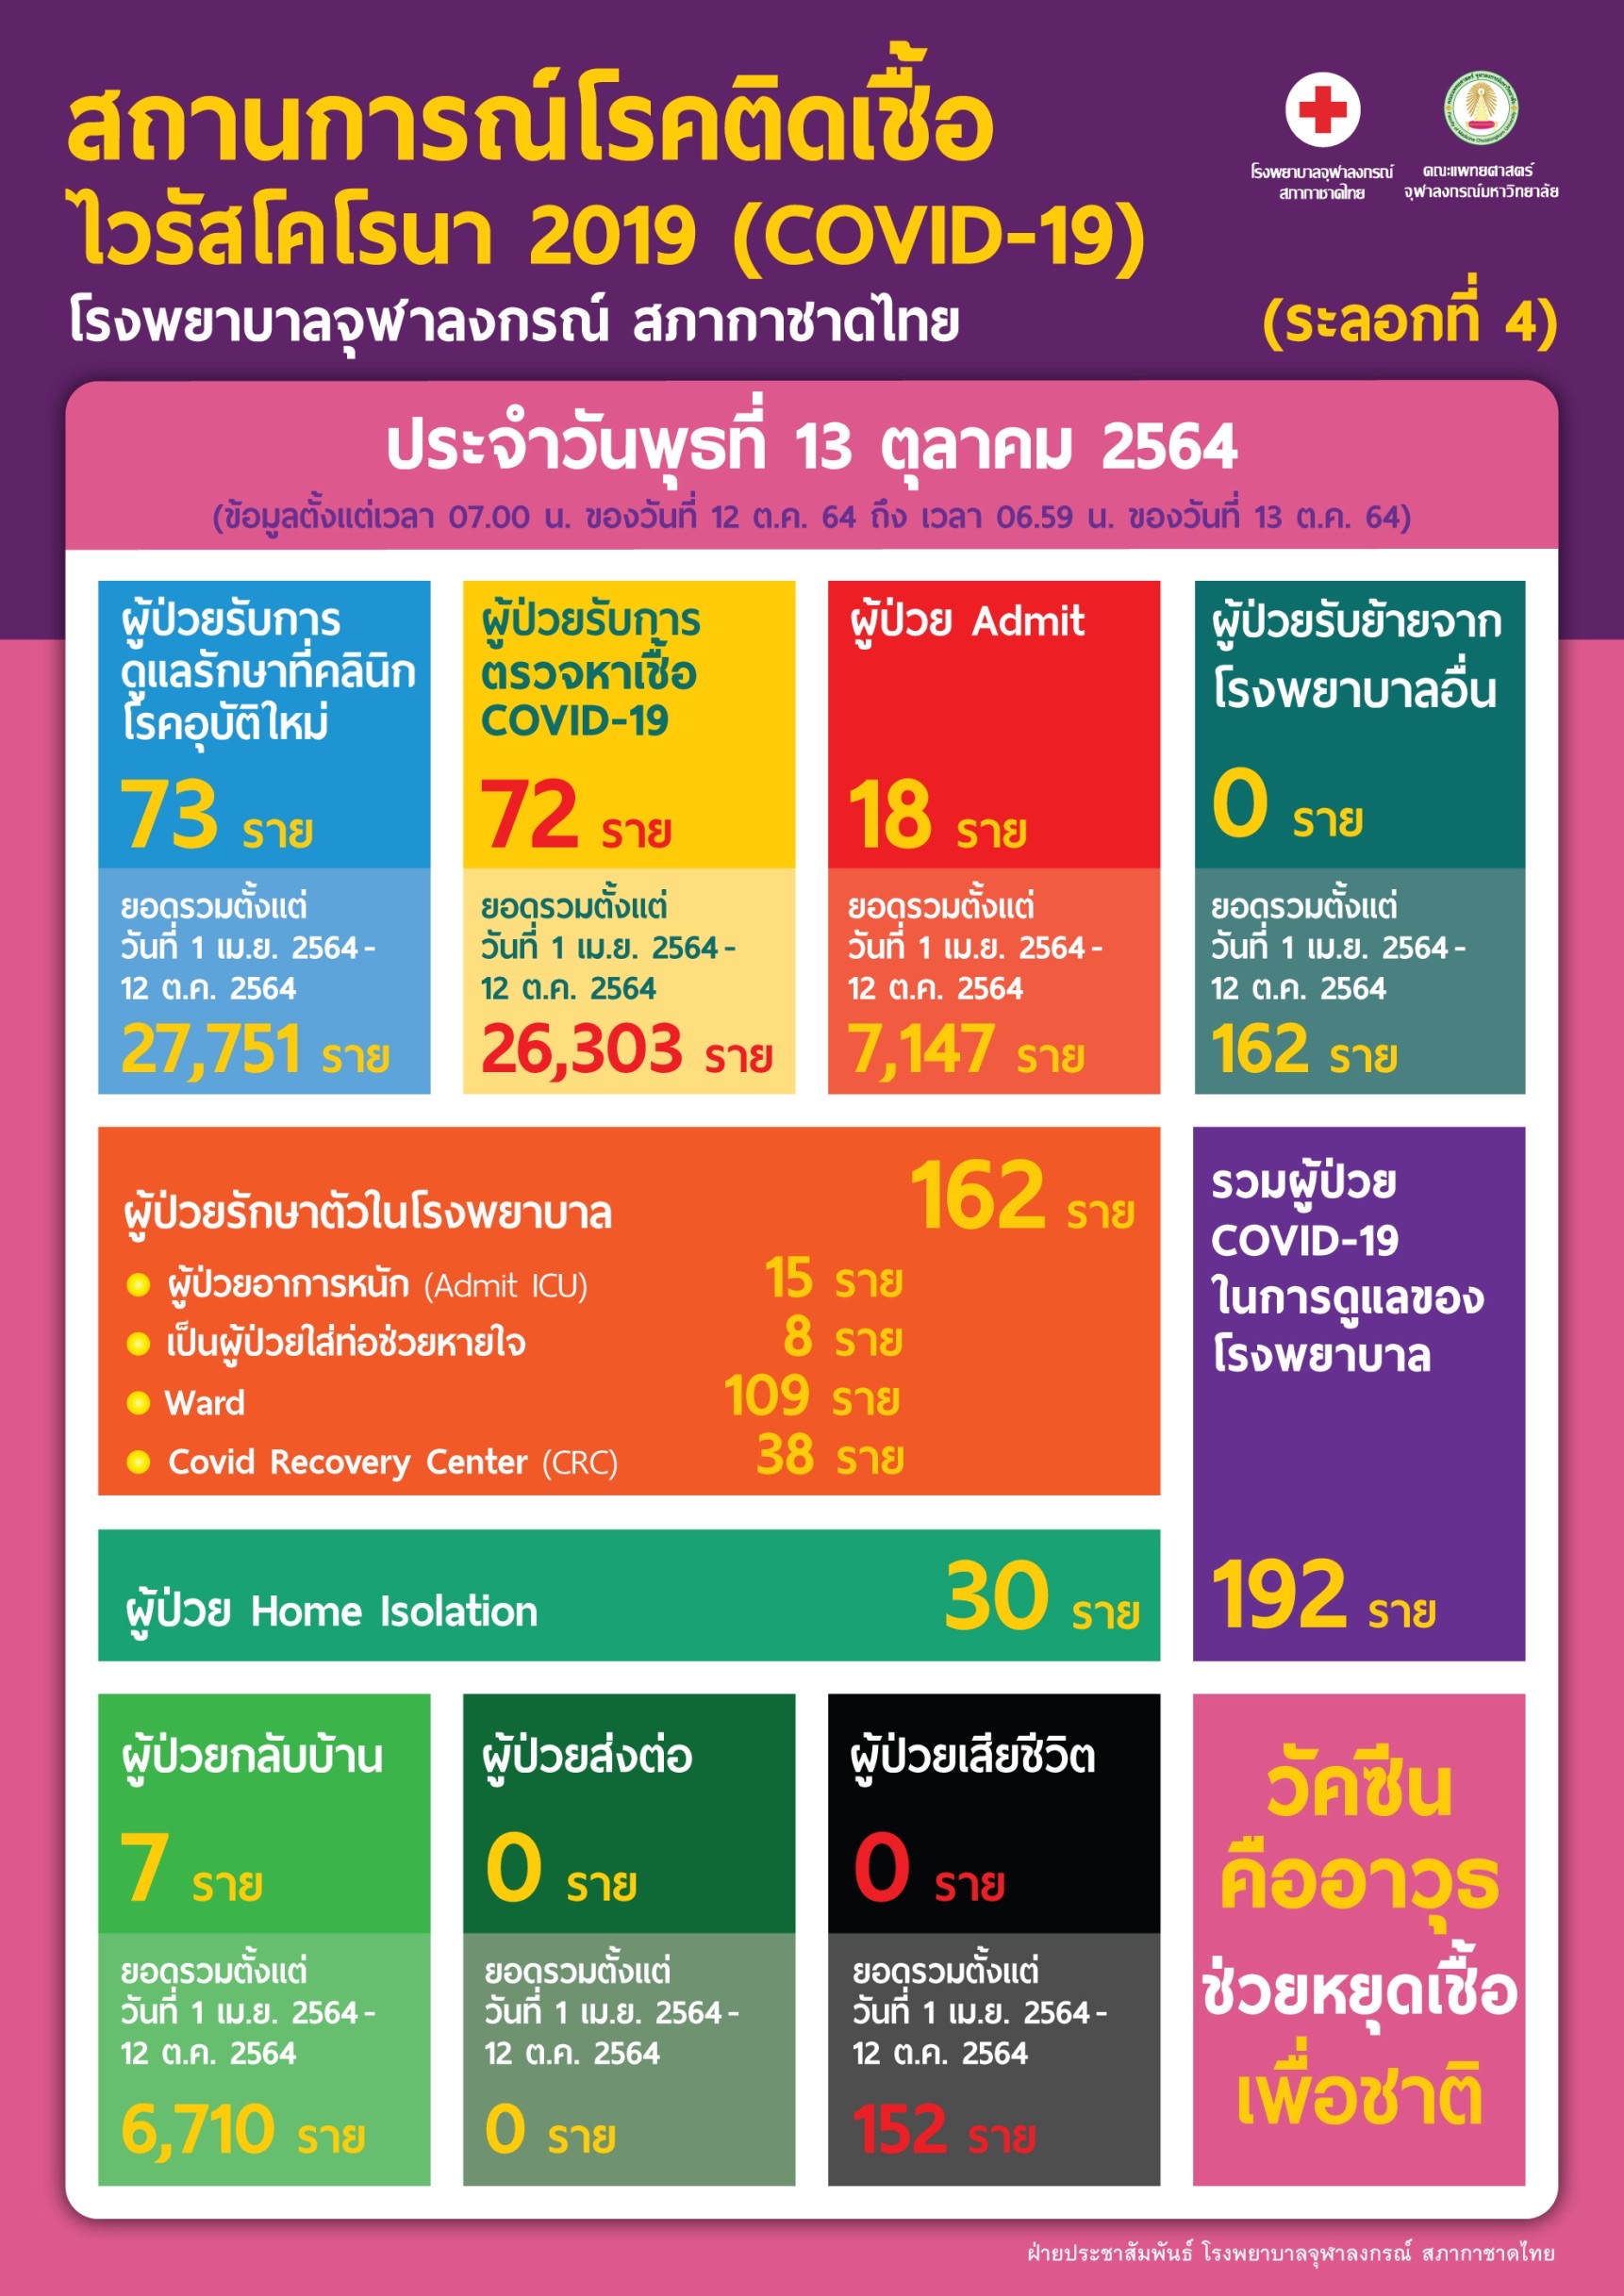 สถานการณ์โรคติดเชื้อไวรัสโคโรนา 2019 (COVID-19) (ระลอกที่ 4) โรงพยาบาลจุฬาลงกรณ์ สภากาชาดไทย ประจำวันพุธที่ 13 ตุลาคม 2564